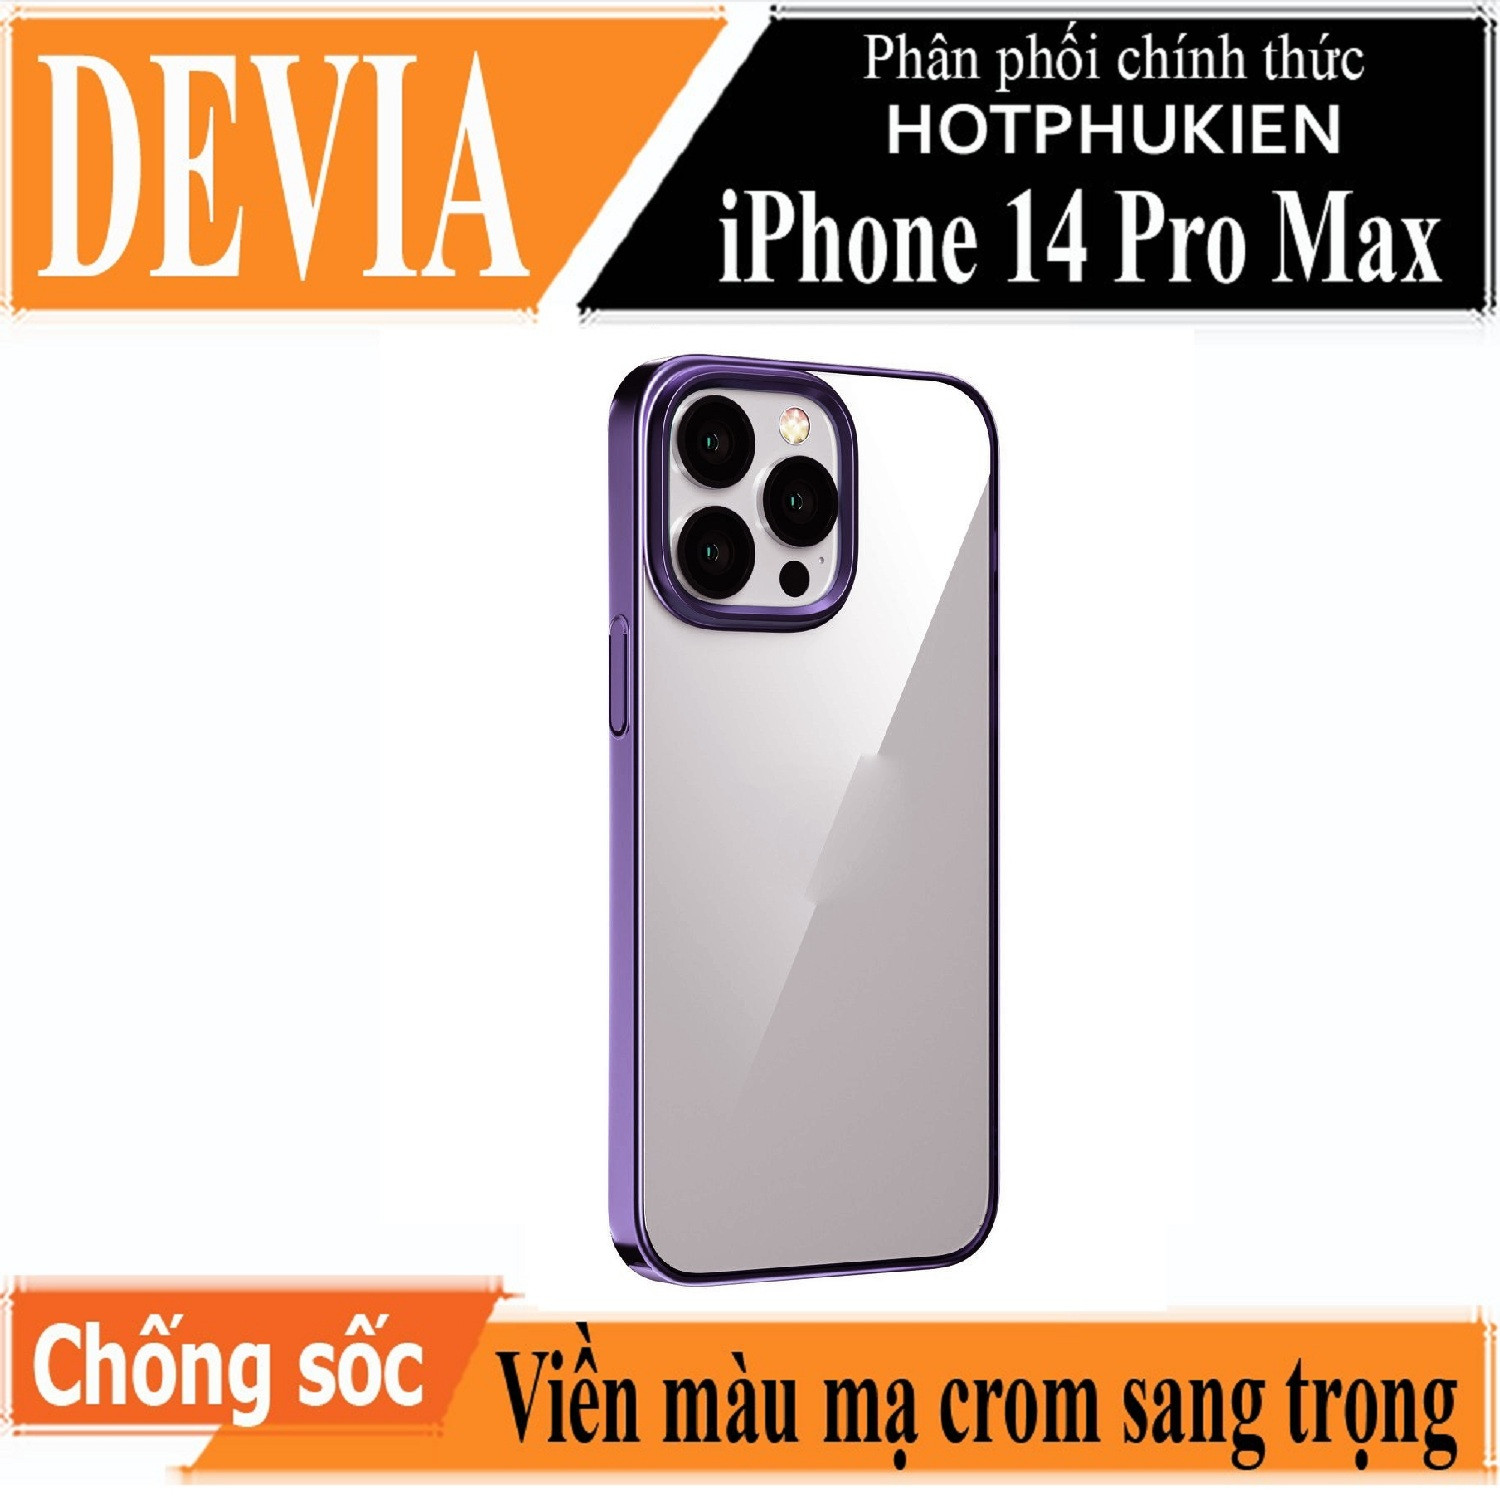 Ốp lưng chống sốc viền màu mạ crom cho iPhone 14 Pro Max (6.7 inch) hiệu DEVIA Crystal Series Shockproof Case